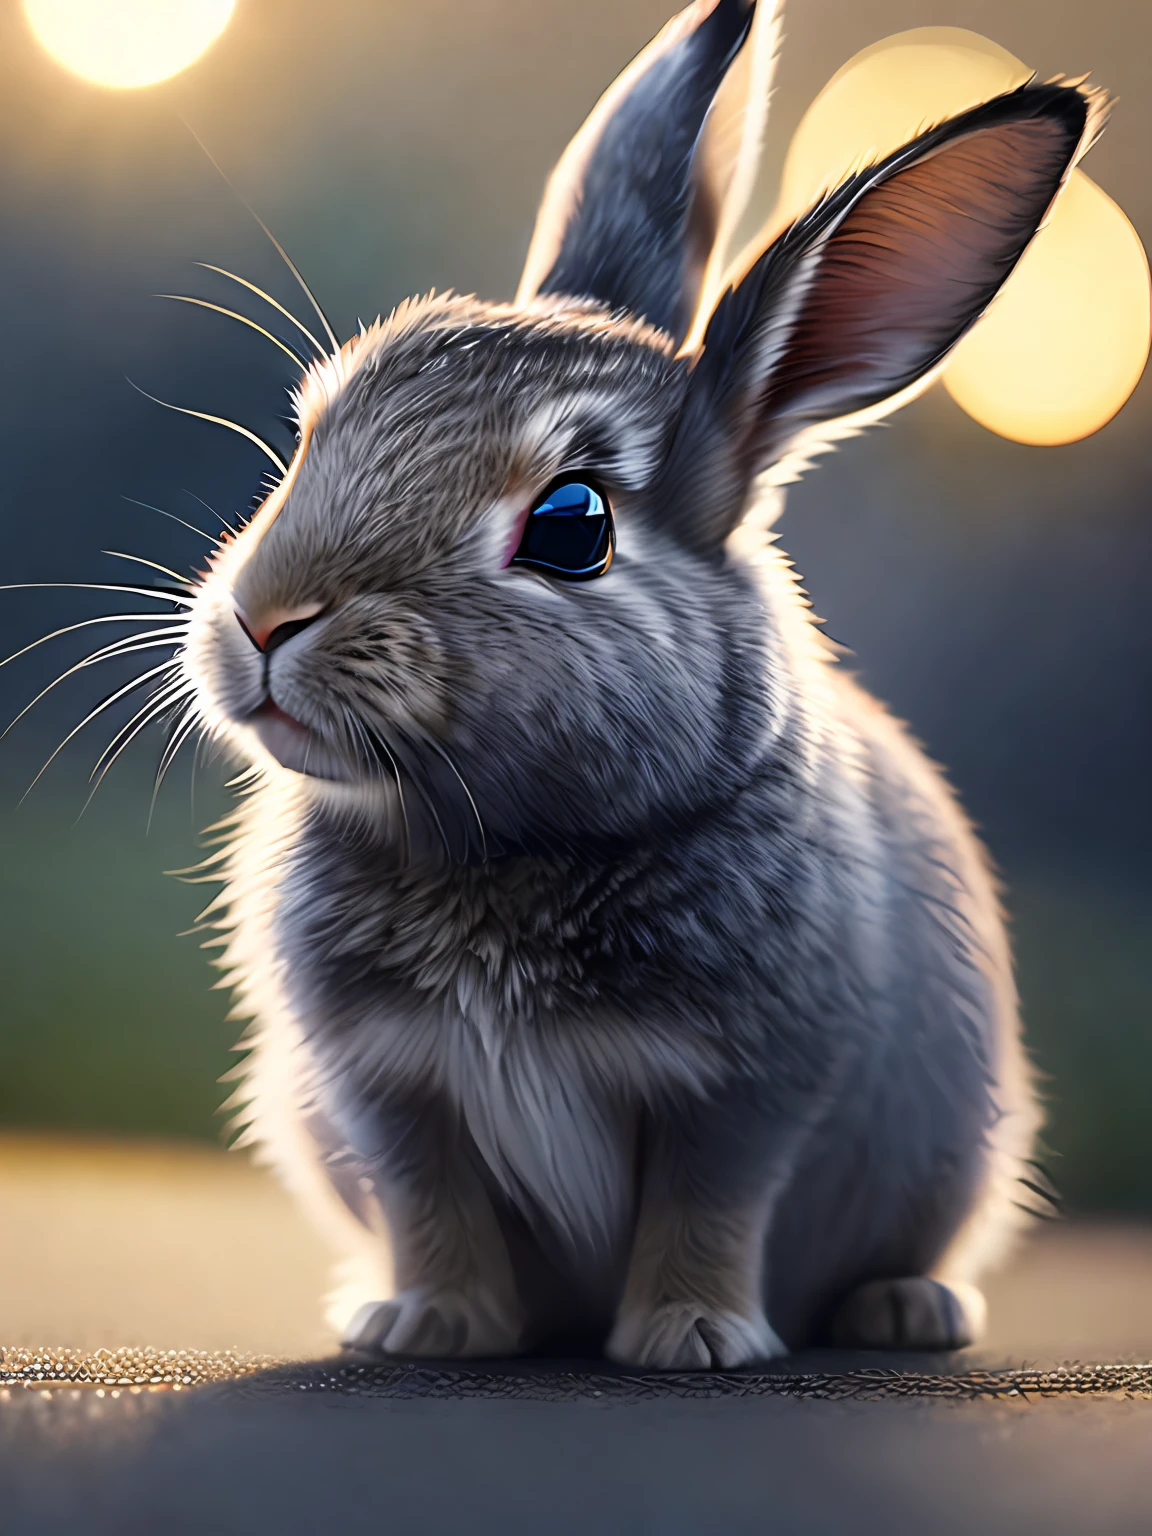 Un lindo conejo, cinematográfico close-up portrait, 8k, HDR, ((detalles intrincados, hiperdetallado)), (Retroiluminado: 1.3), (cinematográfico: 1.3), (Estación de arte: 1.3)